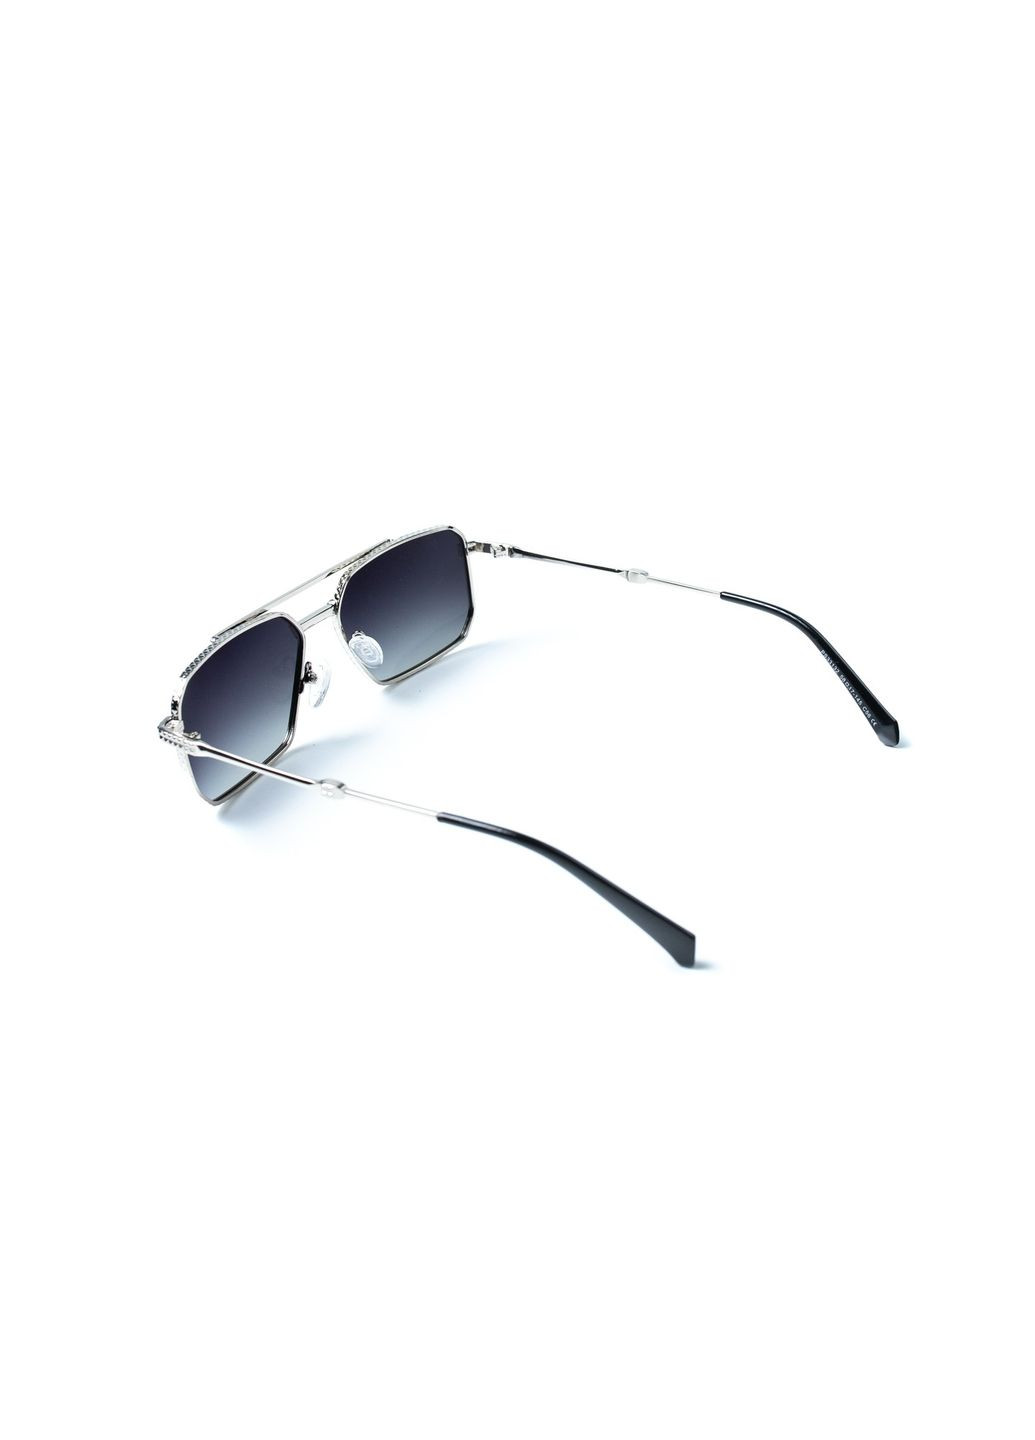 Солнцезащитные очки с поляризацией Фэшн-классика мужские 446-427 LuckyLOOK 446-427м (292735691)